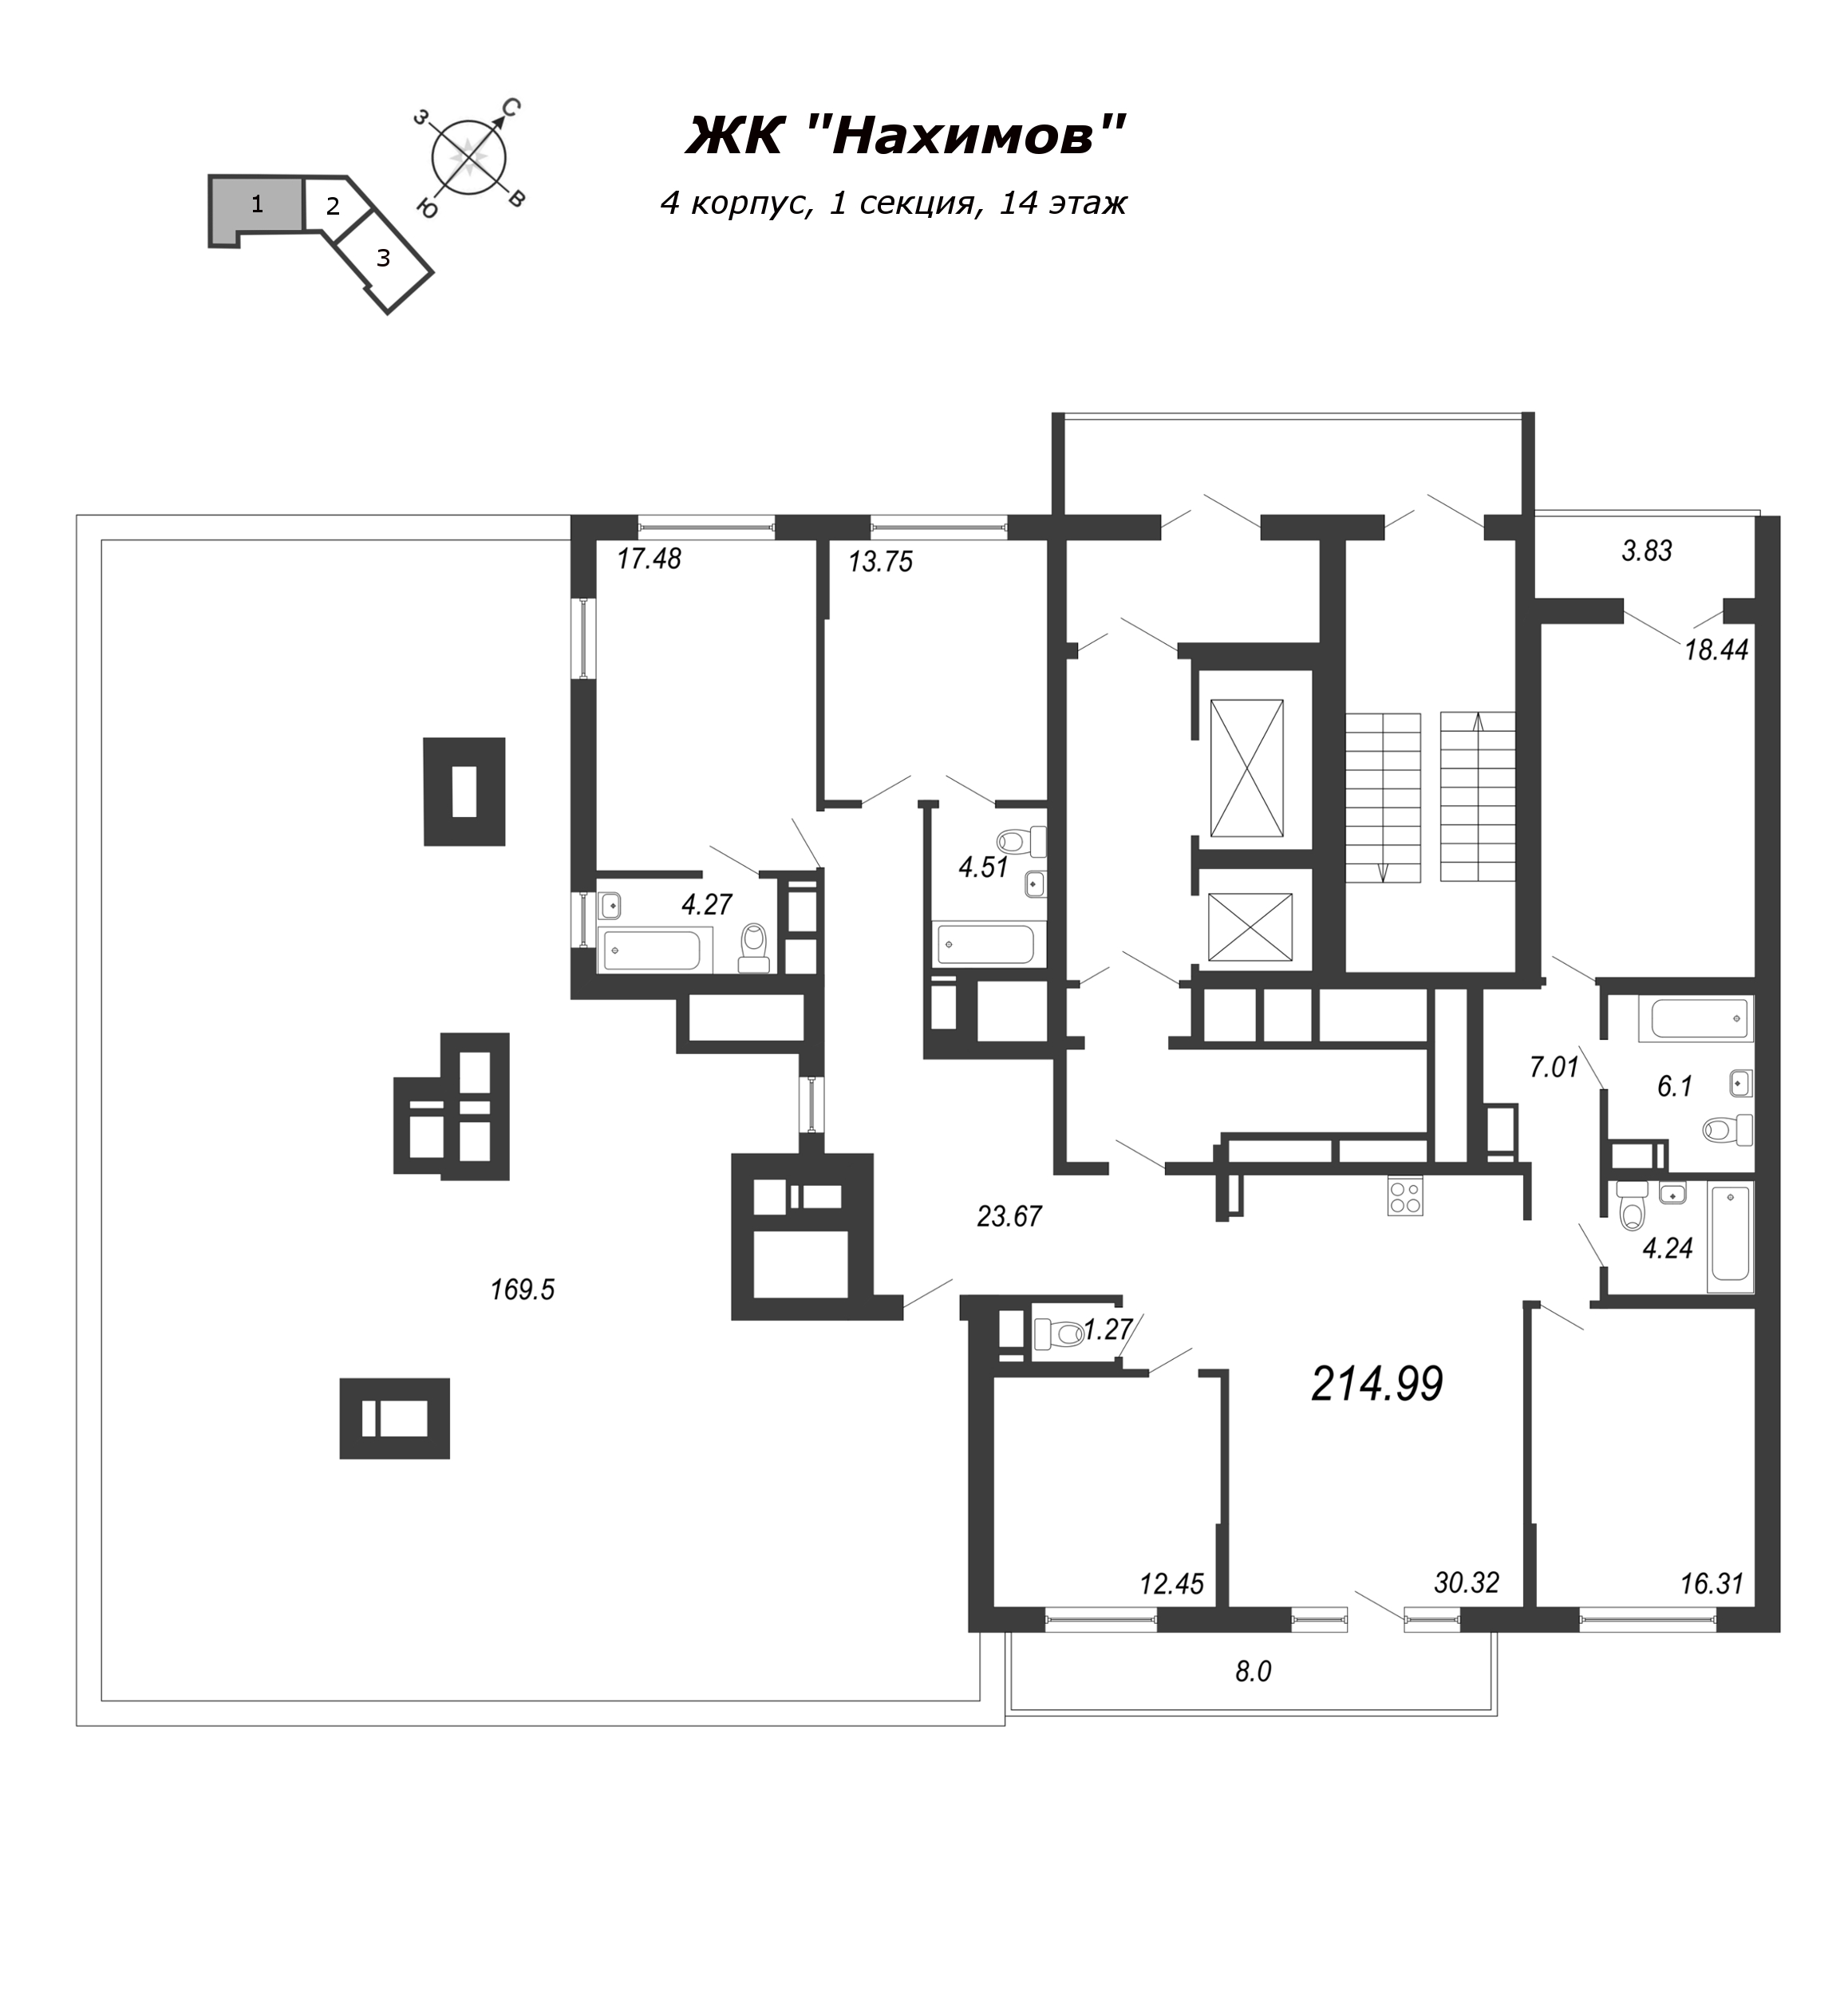 5-комнатная квартира, 224.4 м² в ЖК "Нахимов" - планировка этажа